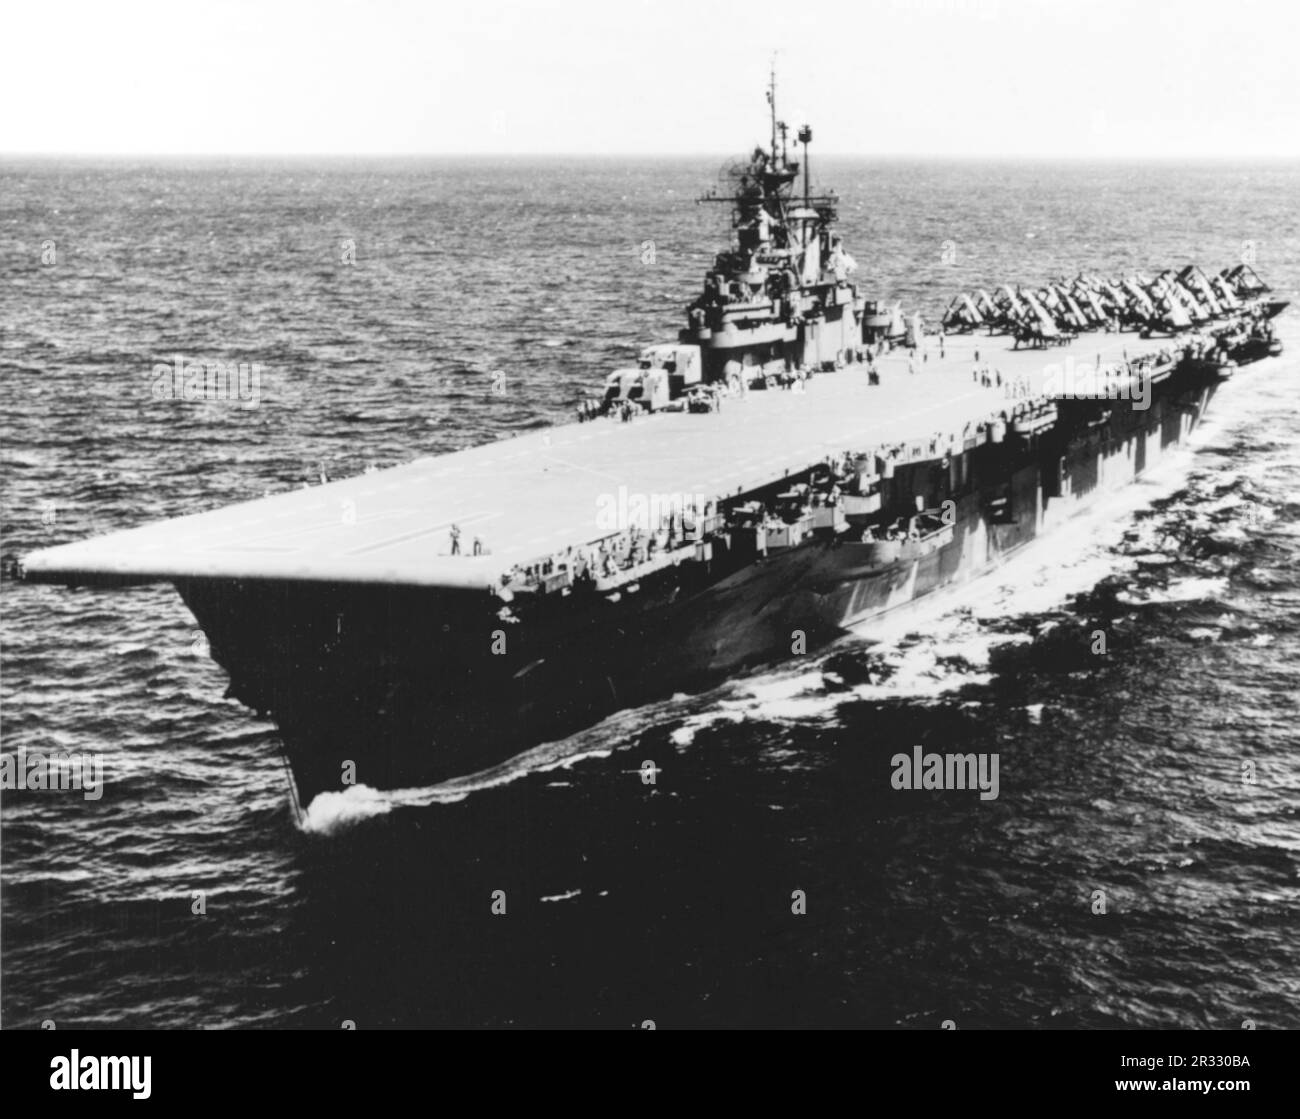 Der US-Flugzeugträger der Essex-Klasse USS Bunker Hill (CV-17) auf See im Jahr 1945. Das Schiff wurde am 11. Mai 1945 in Okinawa durch zwei Kamikaze-Angriffe in einer Minute schwer beschädigt. Er griff voll betankt und bewaffnete Flugzeuge an Deck an und löste sehr gefährliche Brände aus. Obwohl das Schiff schwer beschädigt war, ging es nicht unter und kehrte zur Reparatur in die USA zurück. Das Schiff wurde 1966 stillgelegt und 1973 verschrottet. Stockfoto